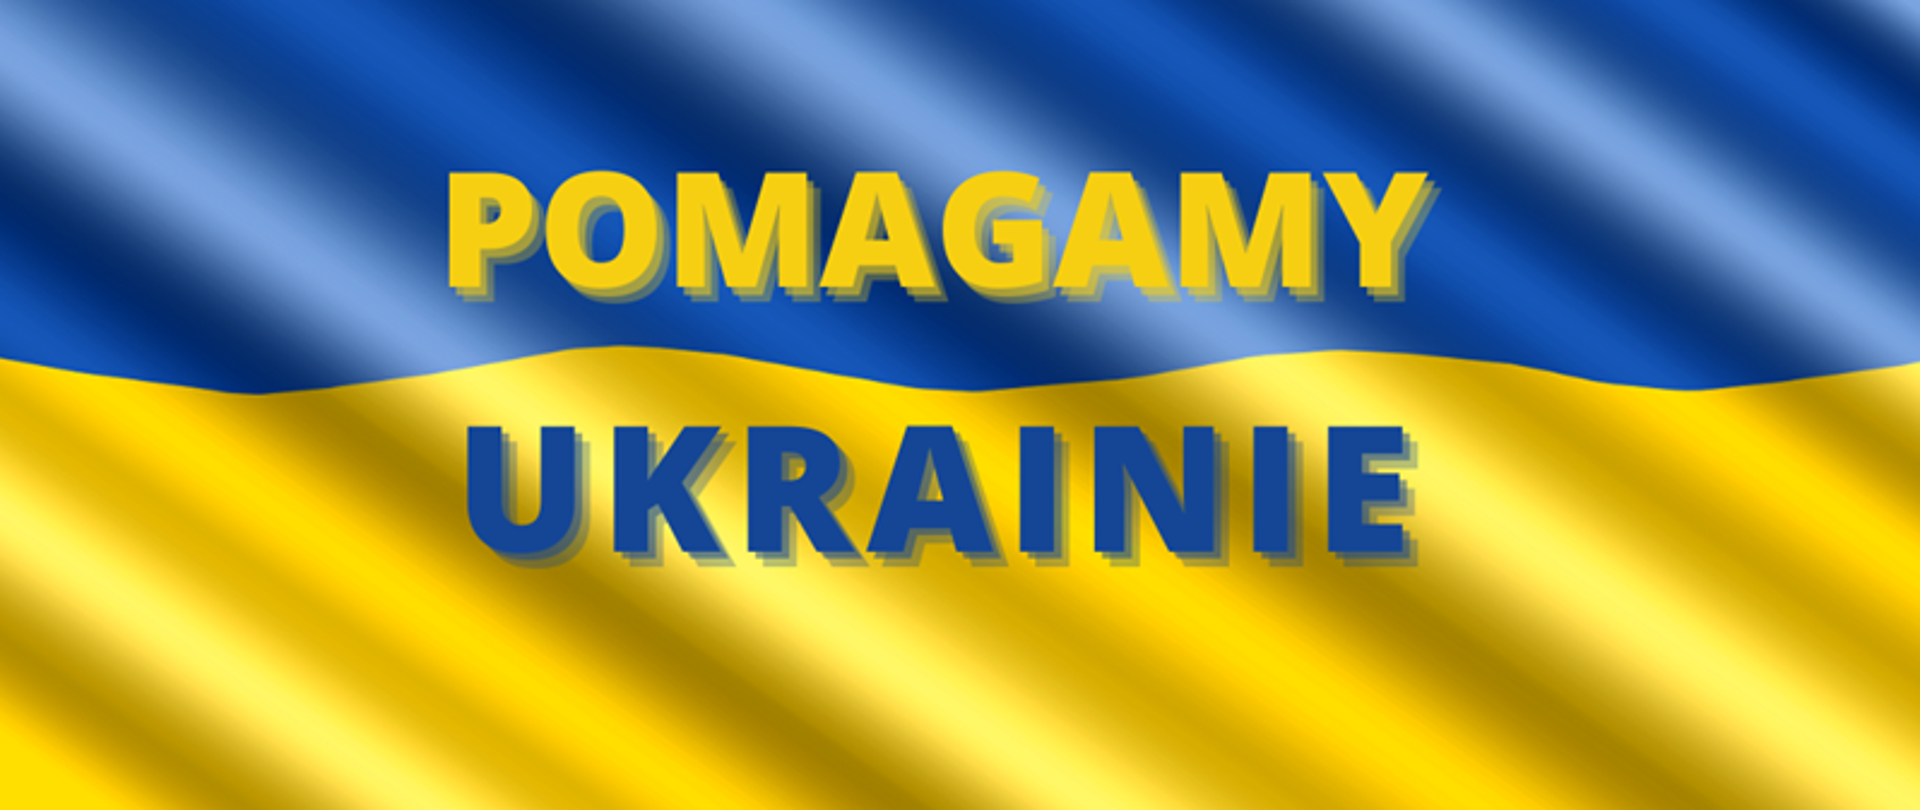 Flaga Ukrainy z napisem "Pomagamy Ukrainie"